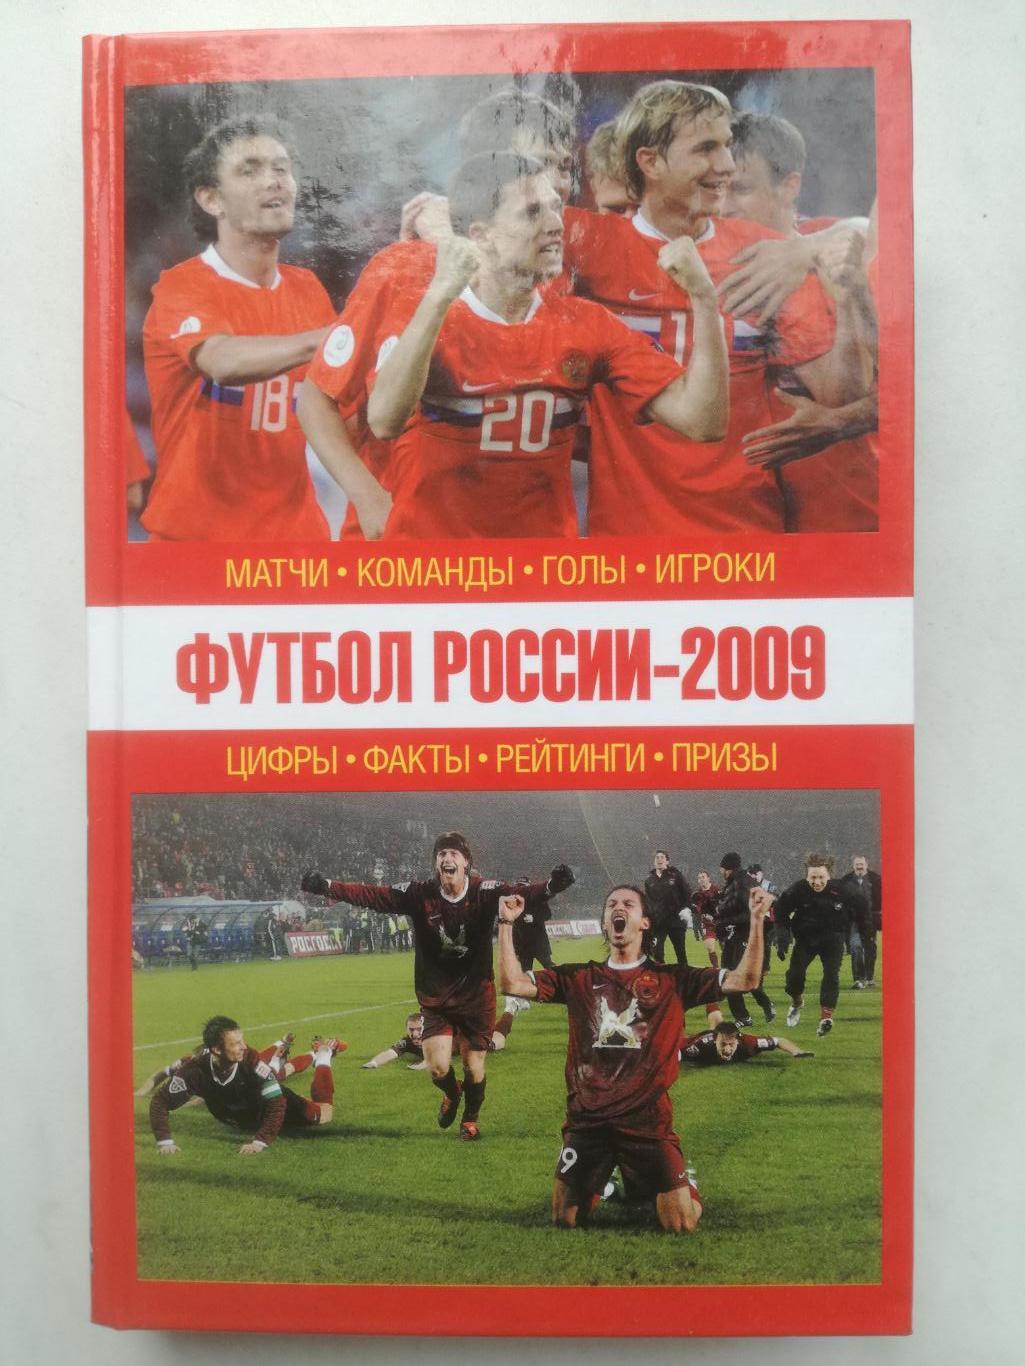 Футбол России - 2009. Матчи, команды, голы, игроки